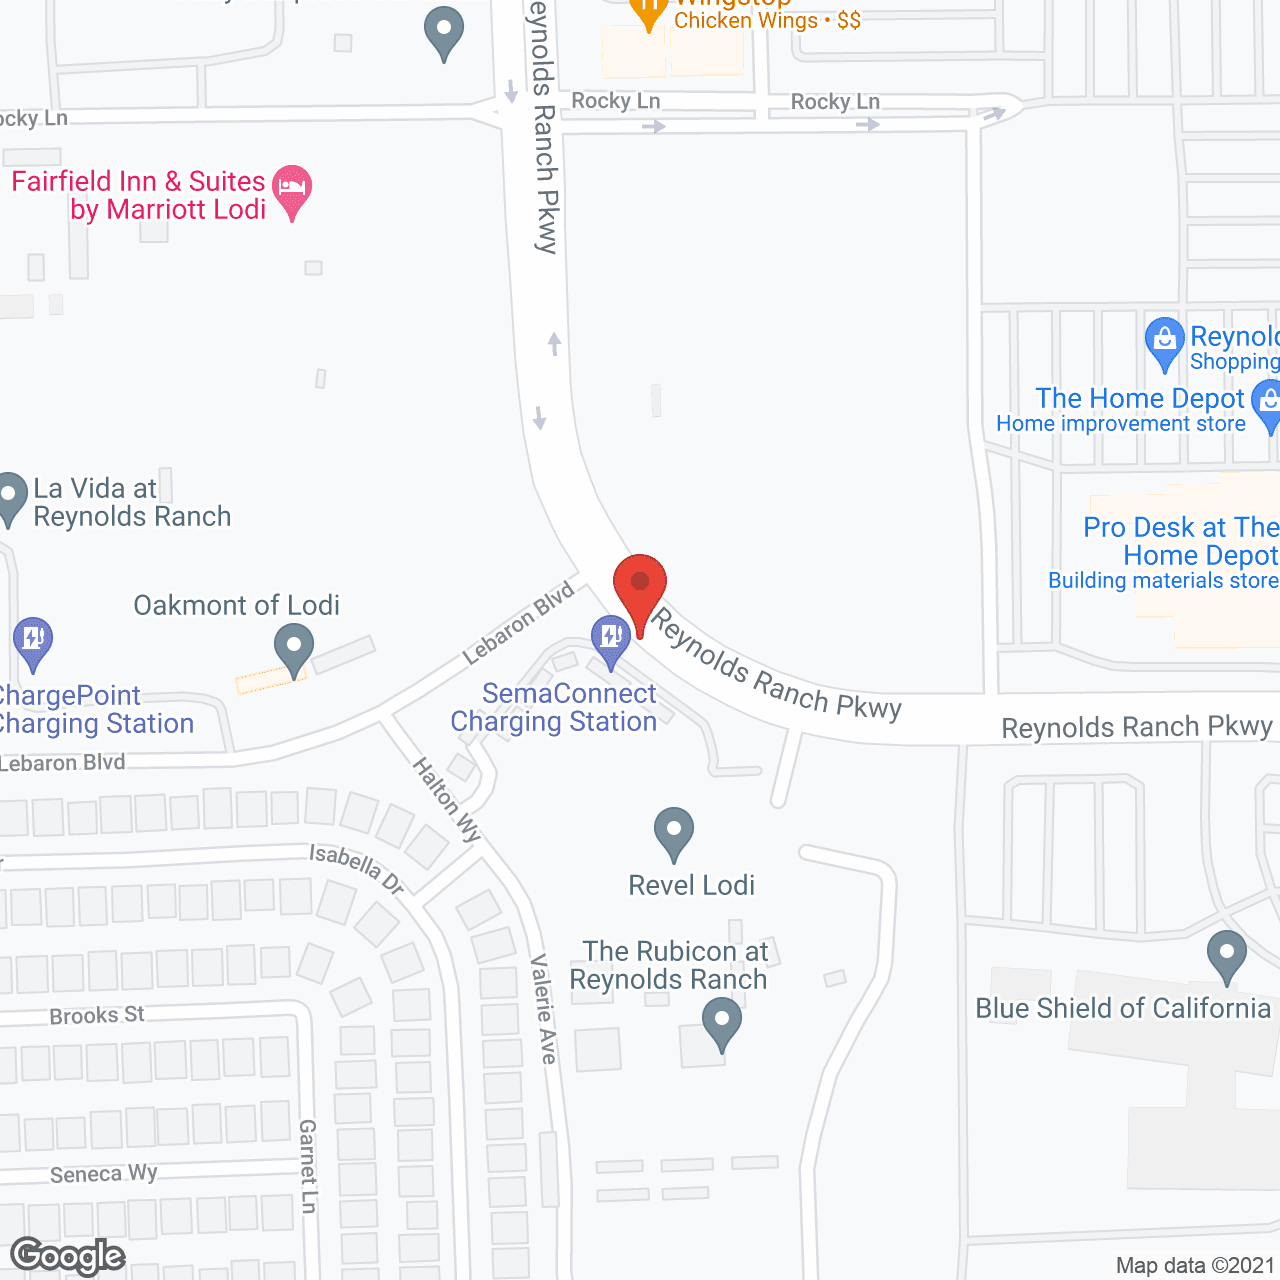 Revel Lodi in google map